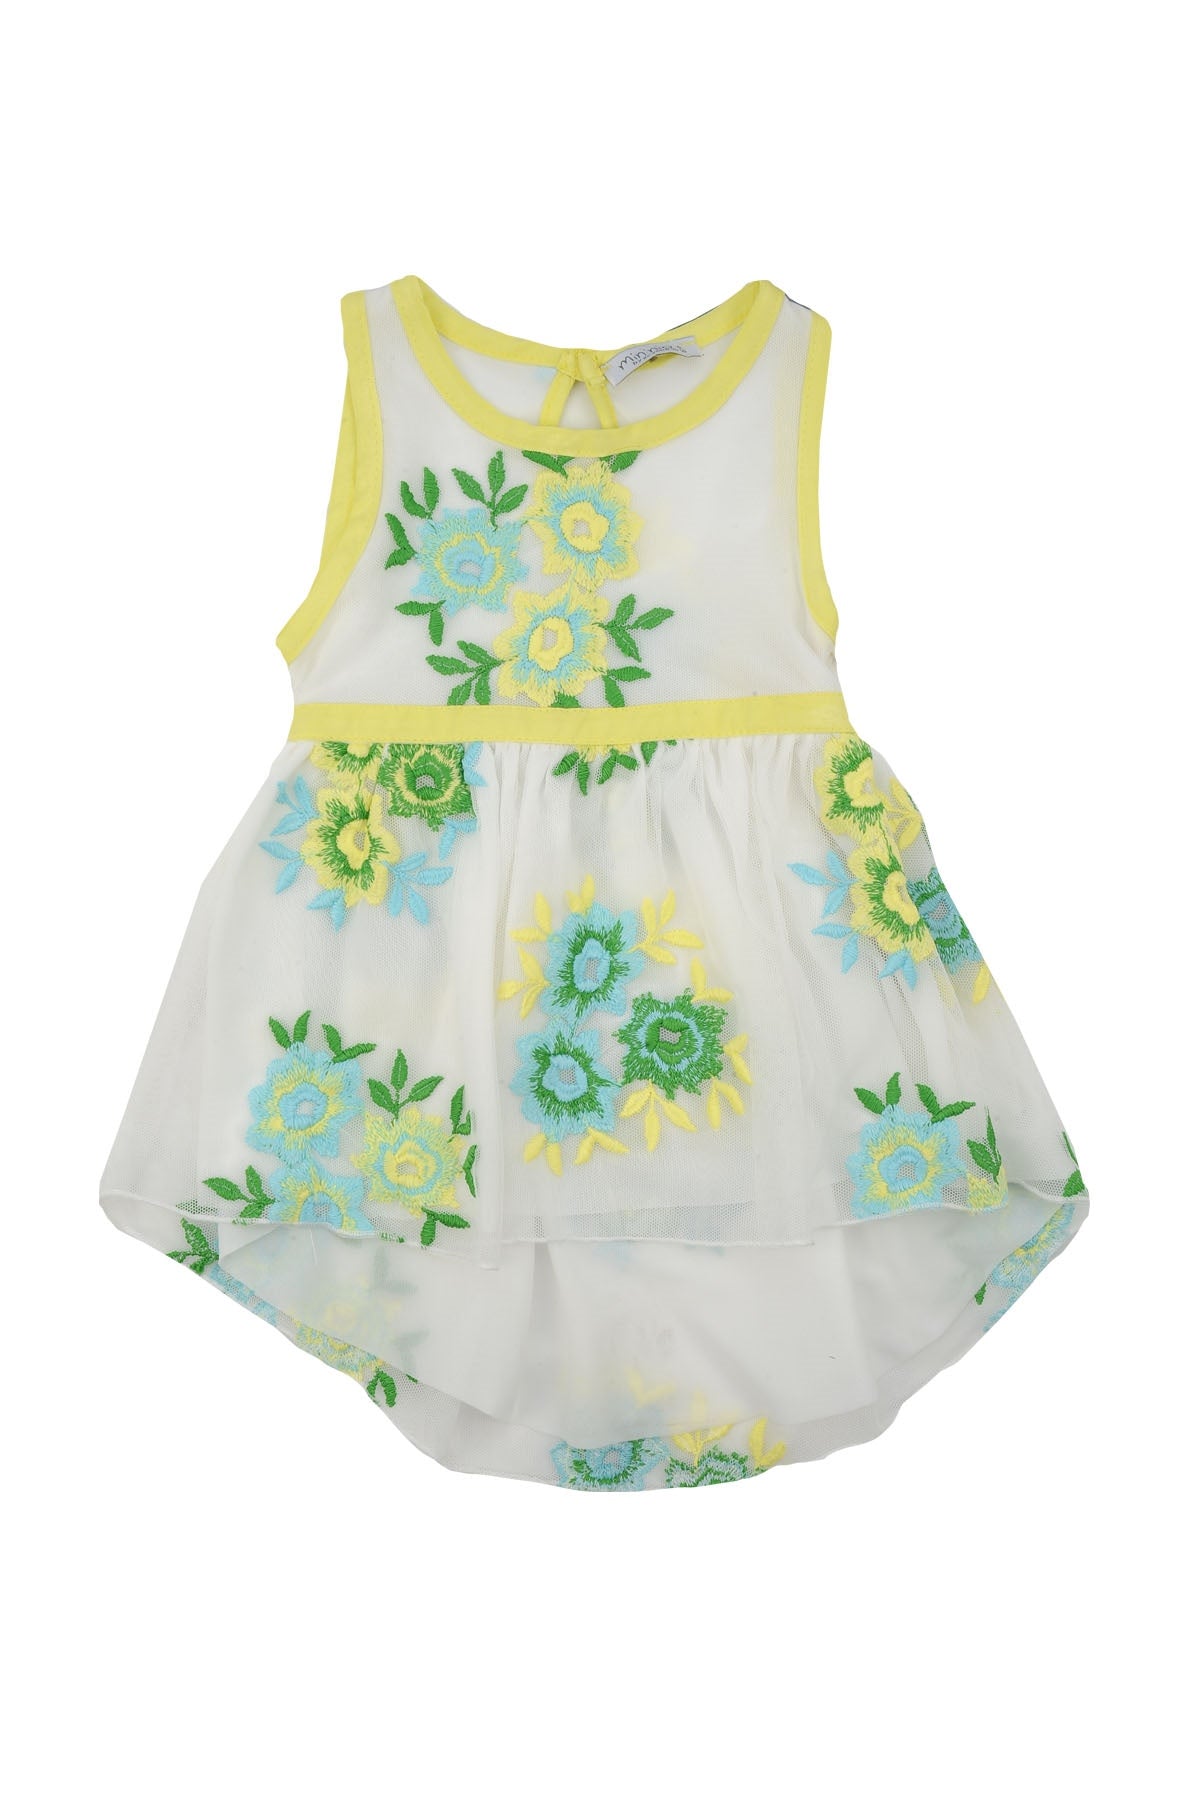 Kız Bebek Sarı Çiçekli Tüllü Elbise (6ay-4yaş)-0